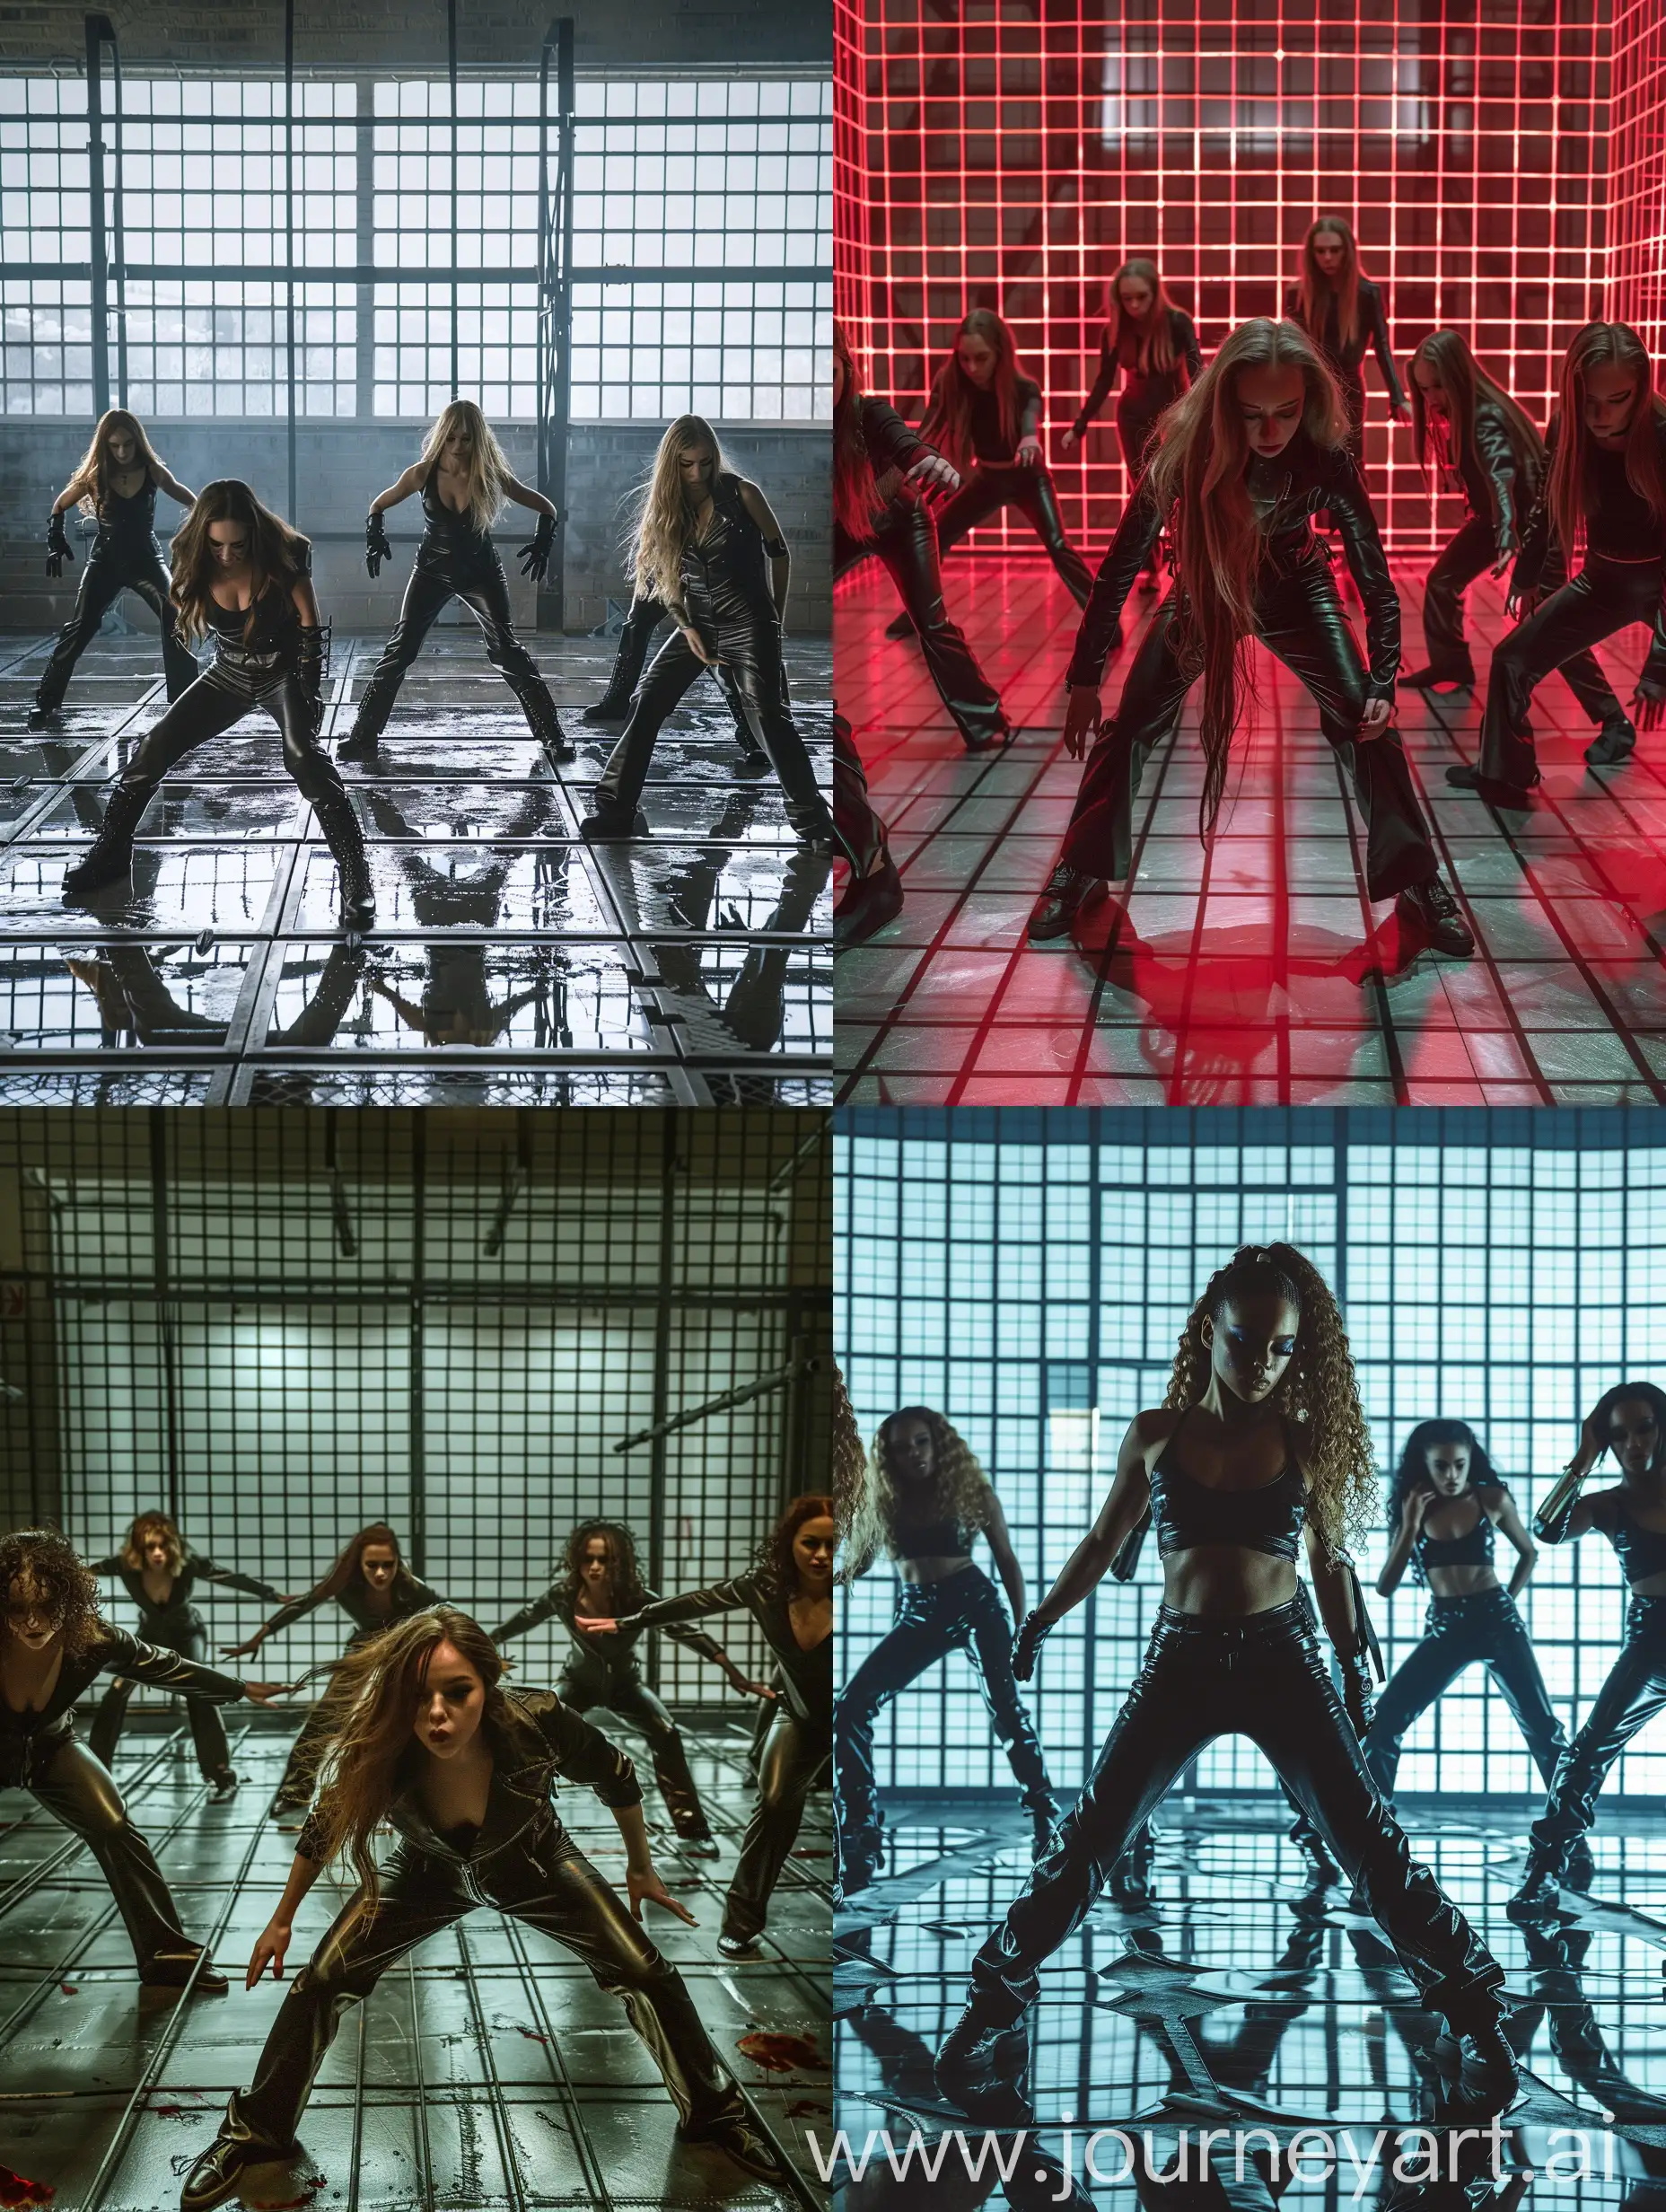 придумай танцевальное выступление в тюремном стиле,с решеткой на заднем фоне, с 4-5 девушками в кожаной одежде на полу